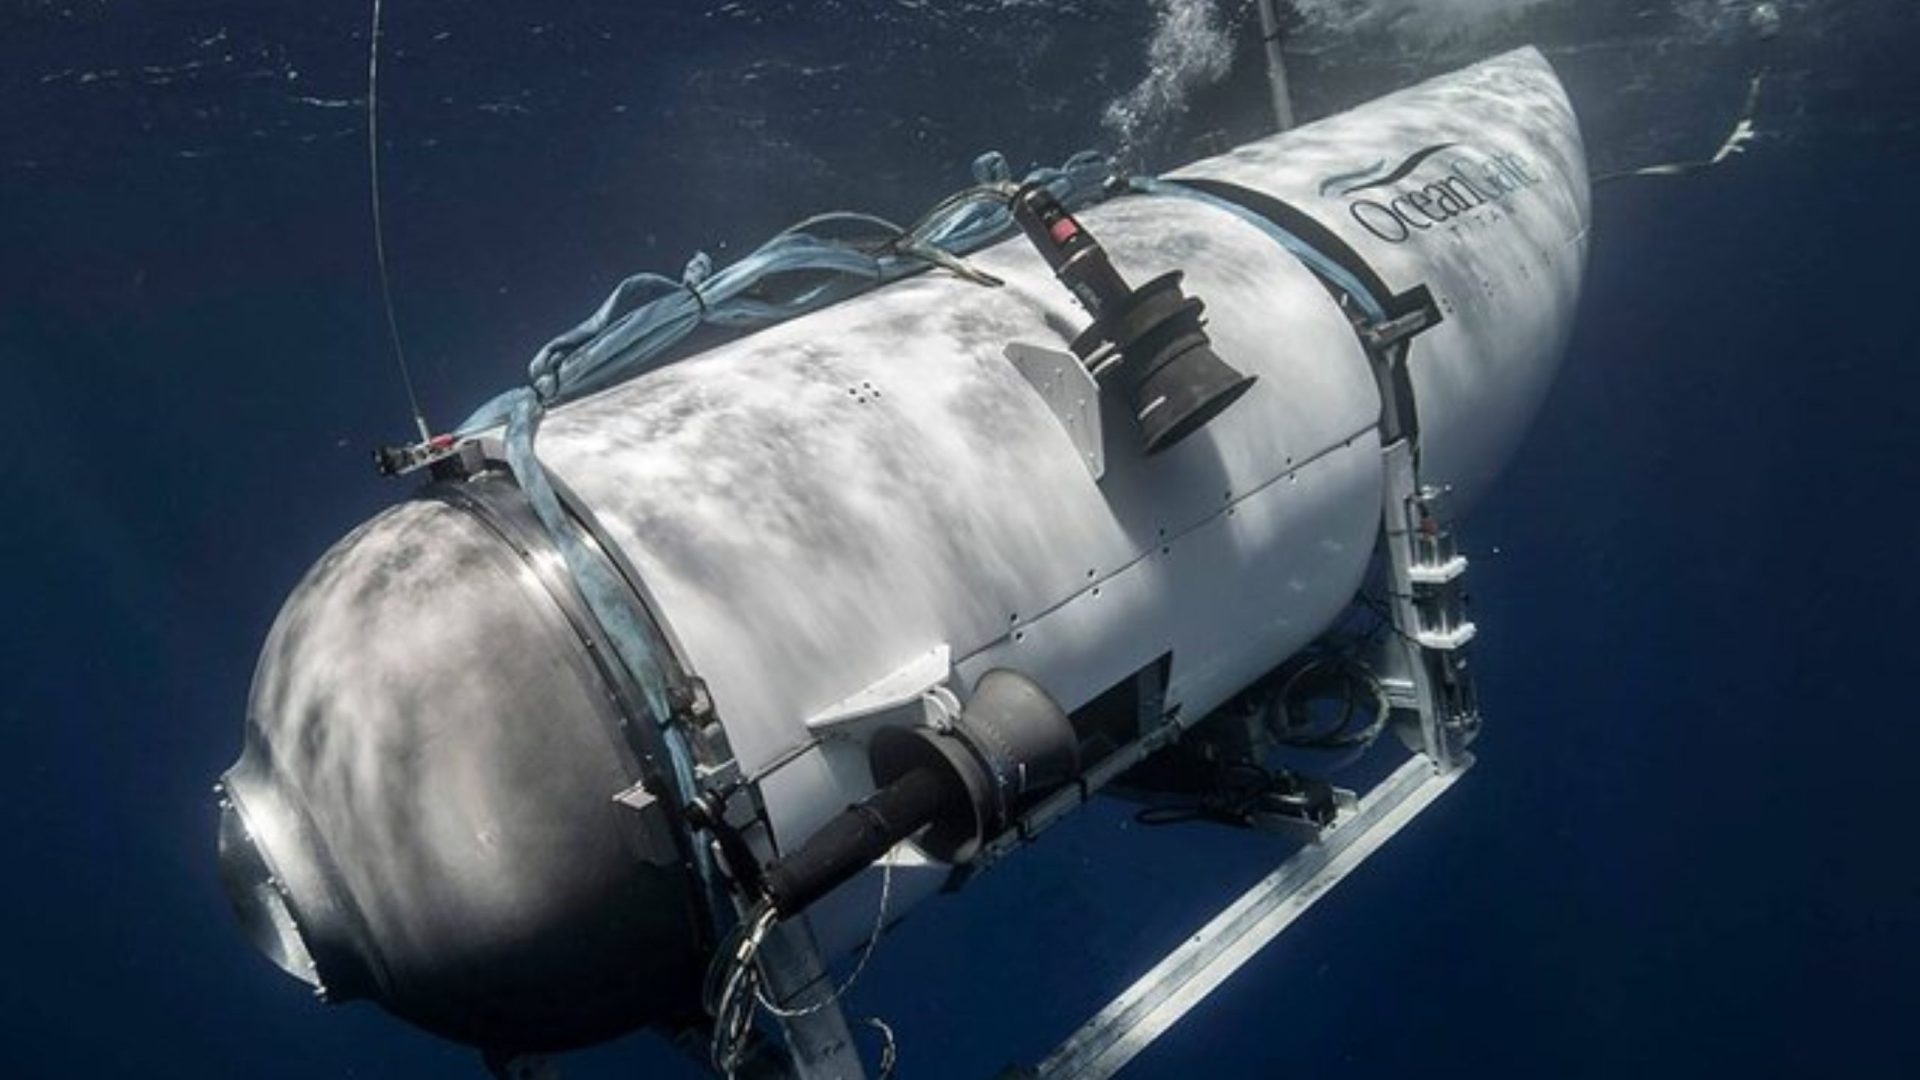 Submarino desaparecido no Oceano Atlântico - Foto: Reprodução/Twitter@OceanGateExpeds